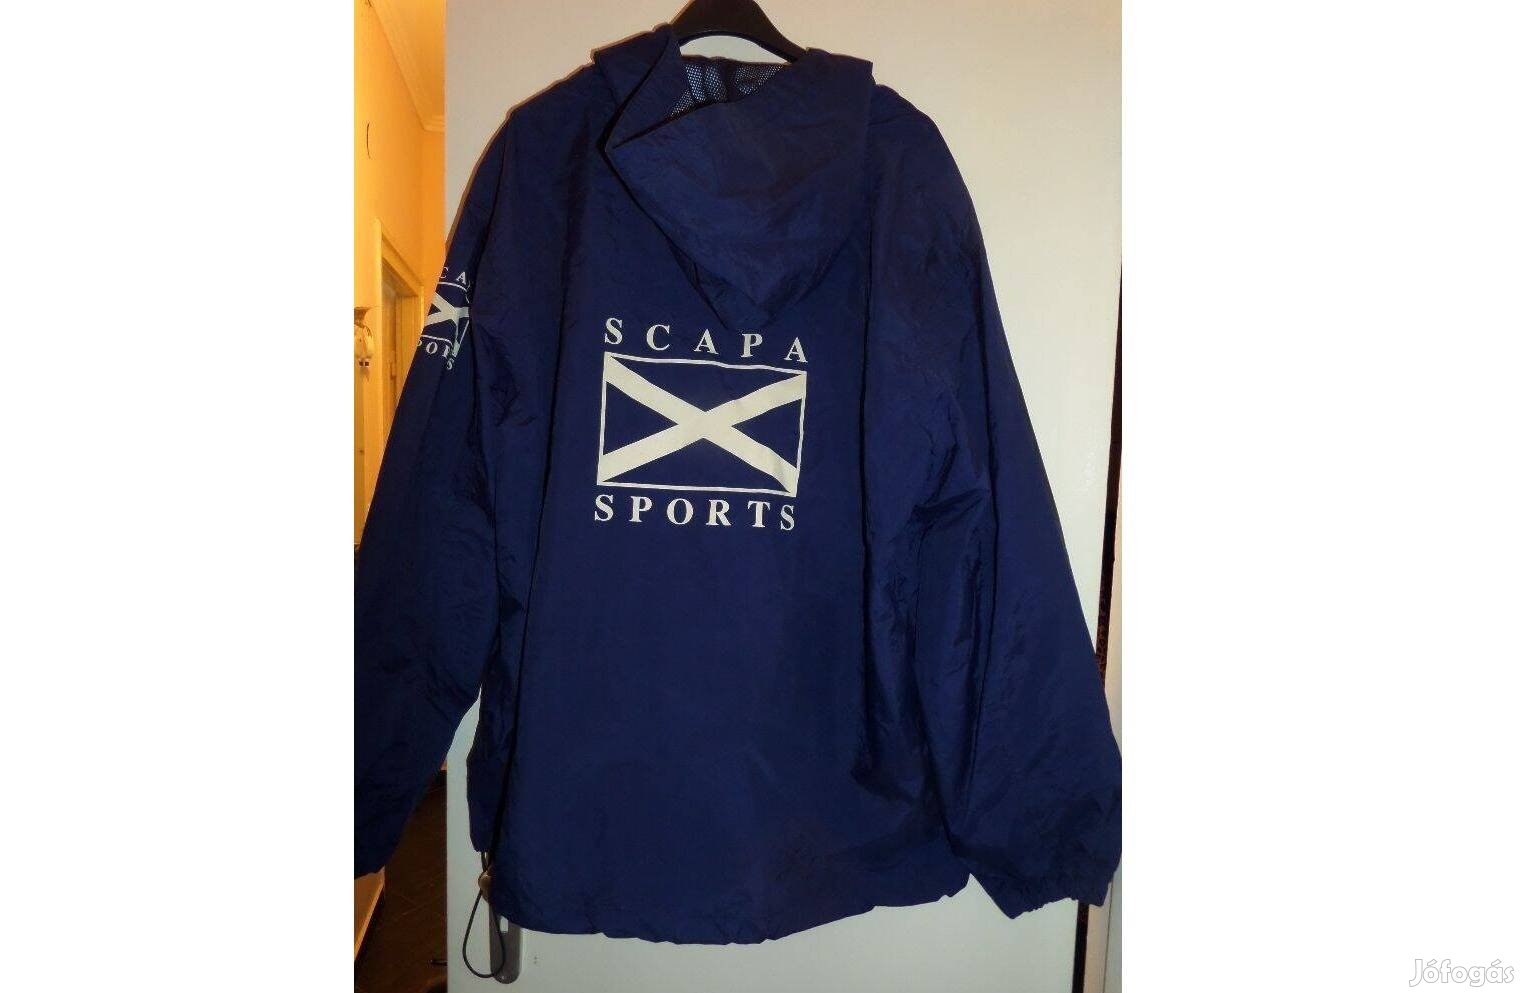 Scapa Sports (eredeti) unisex XL -es bebújós kapucnis széldzseki